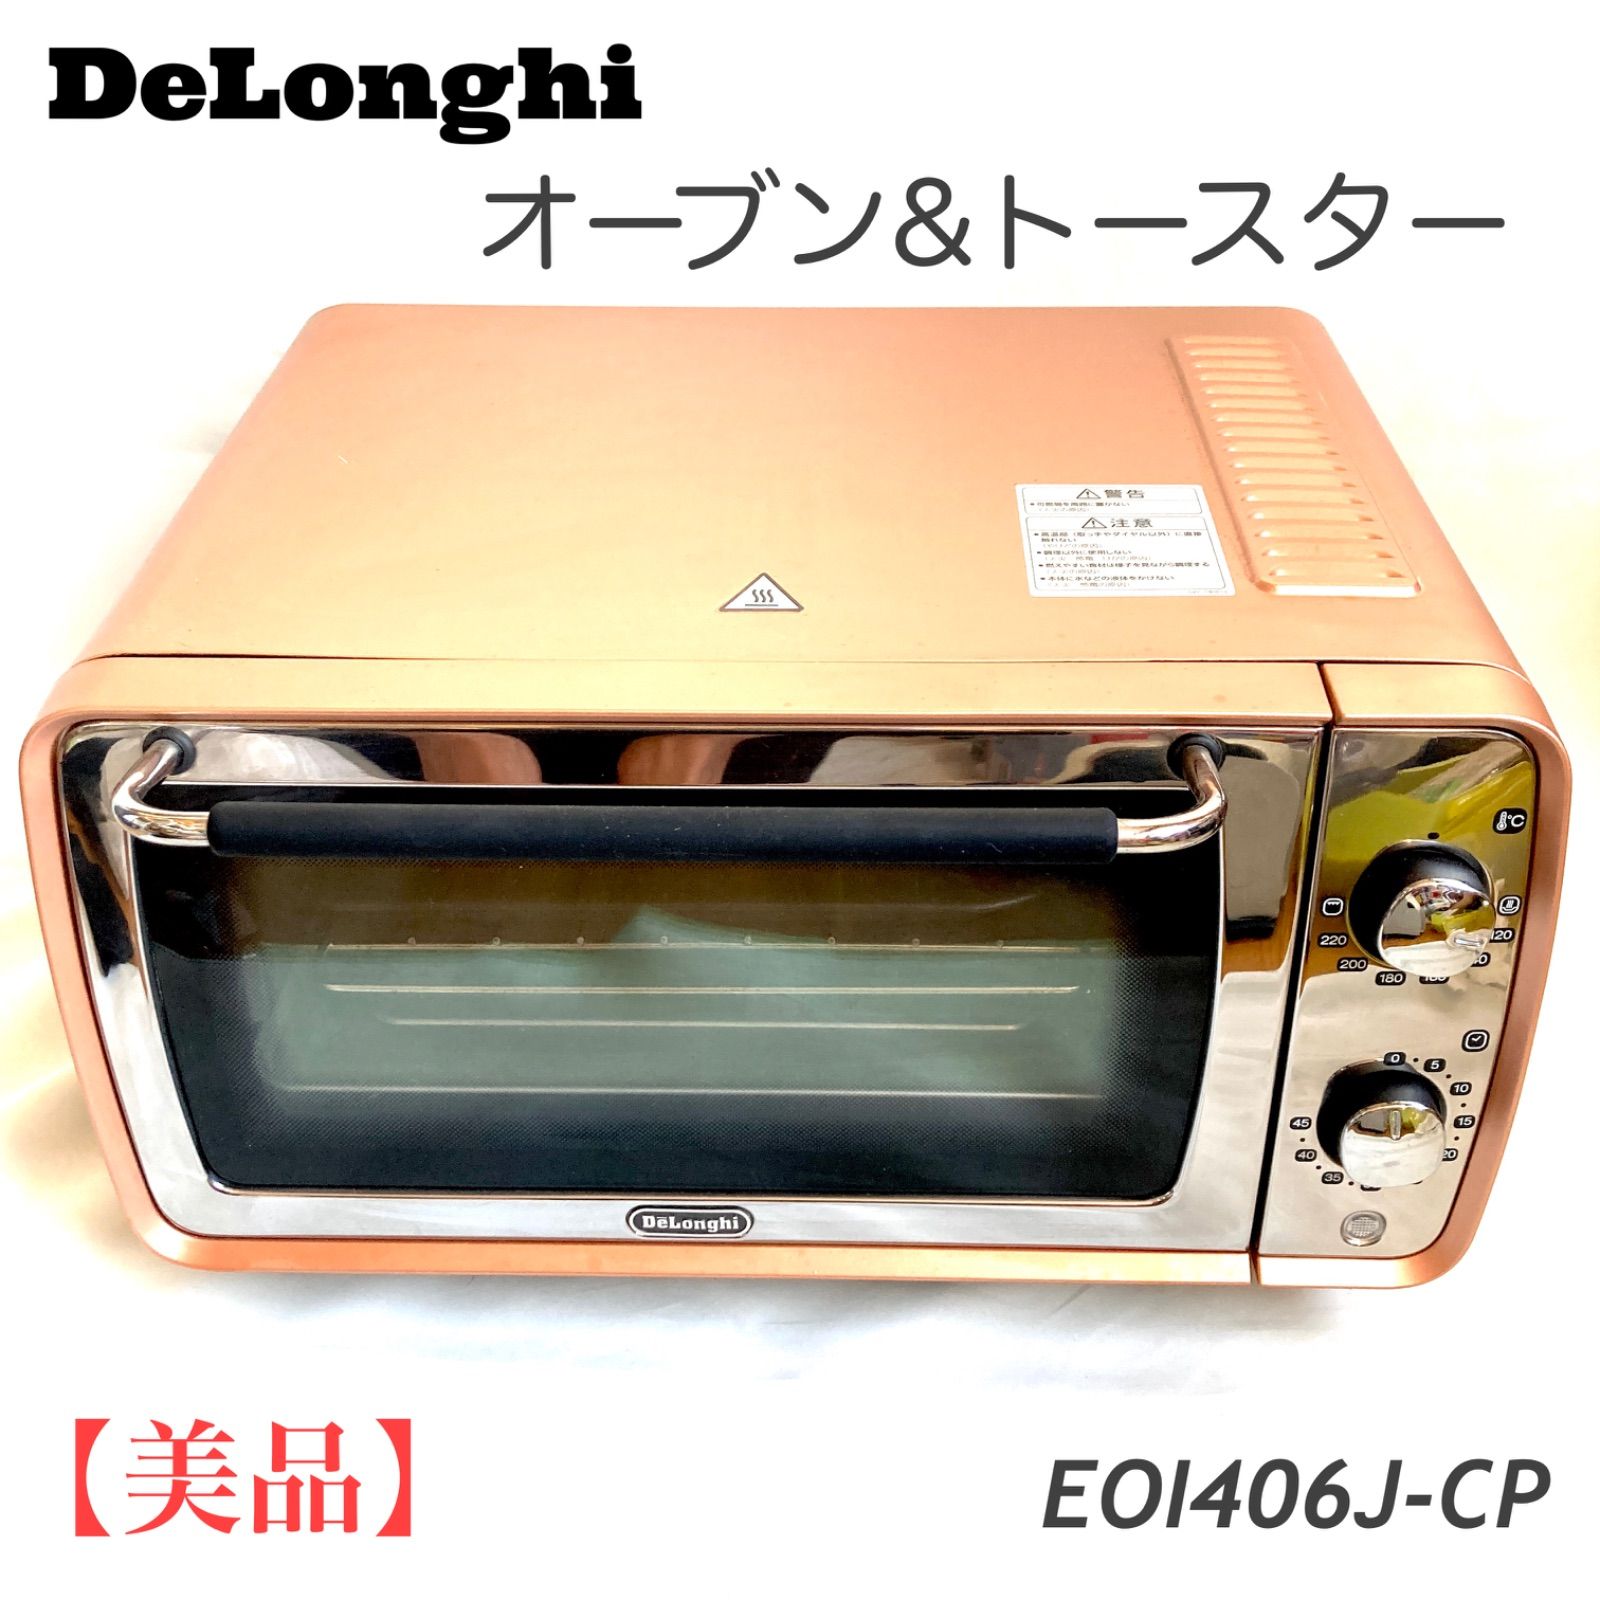 デロンギ EOI406J-CP オーブン&トースター